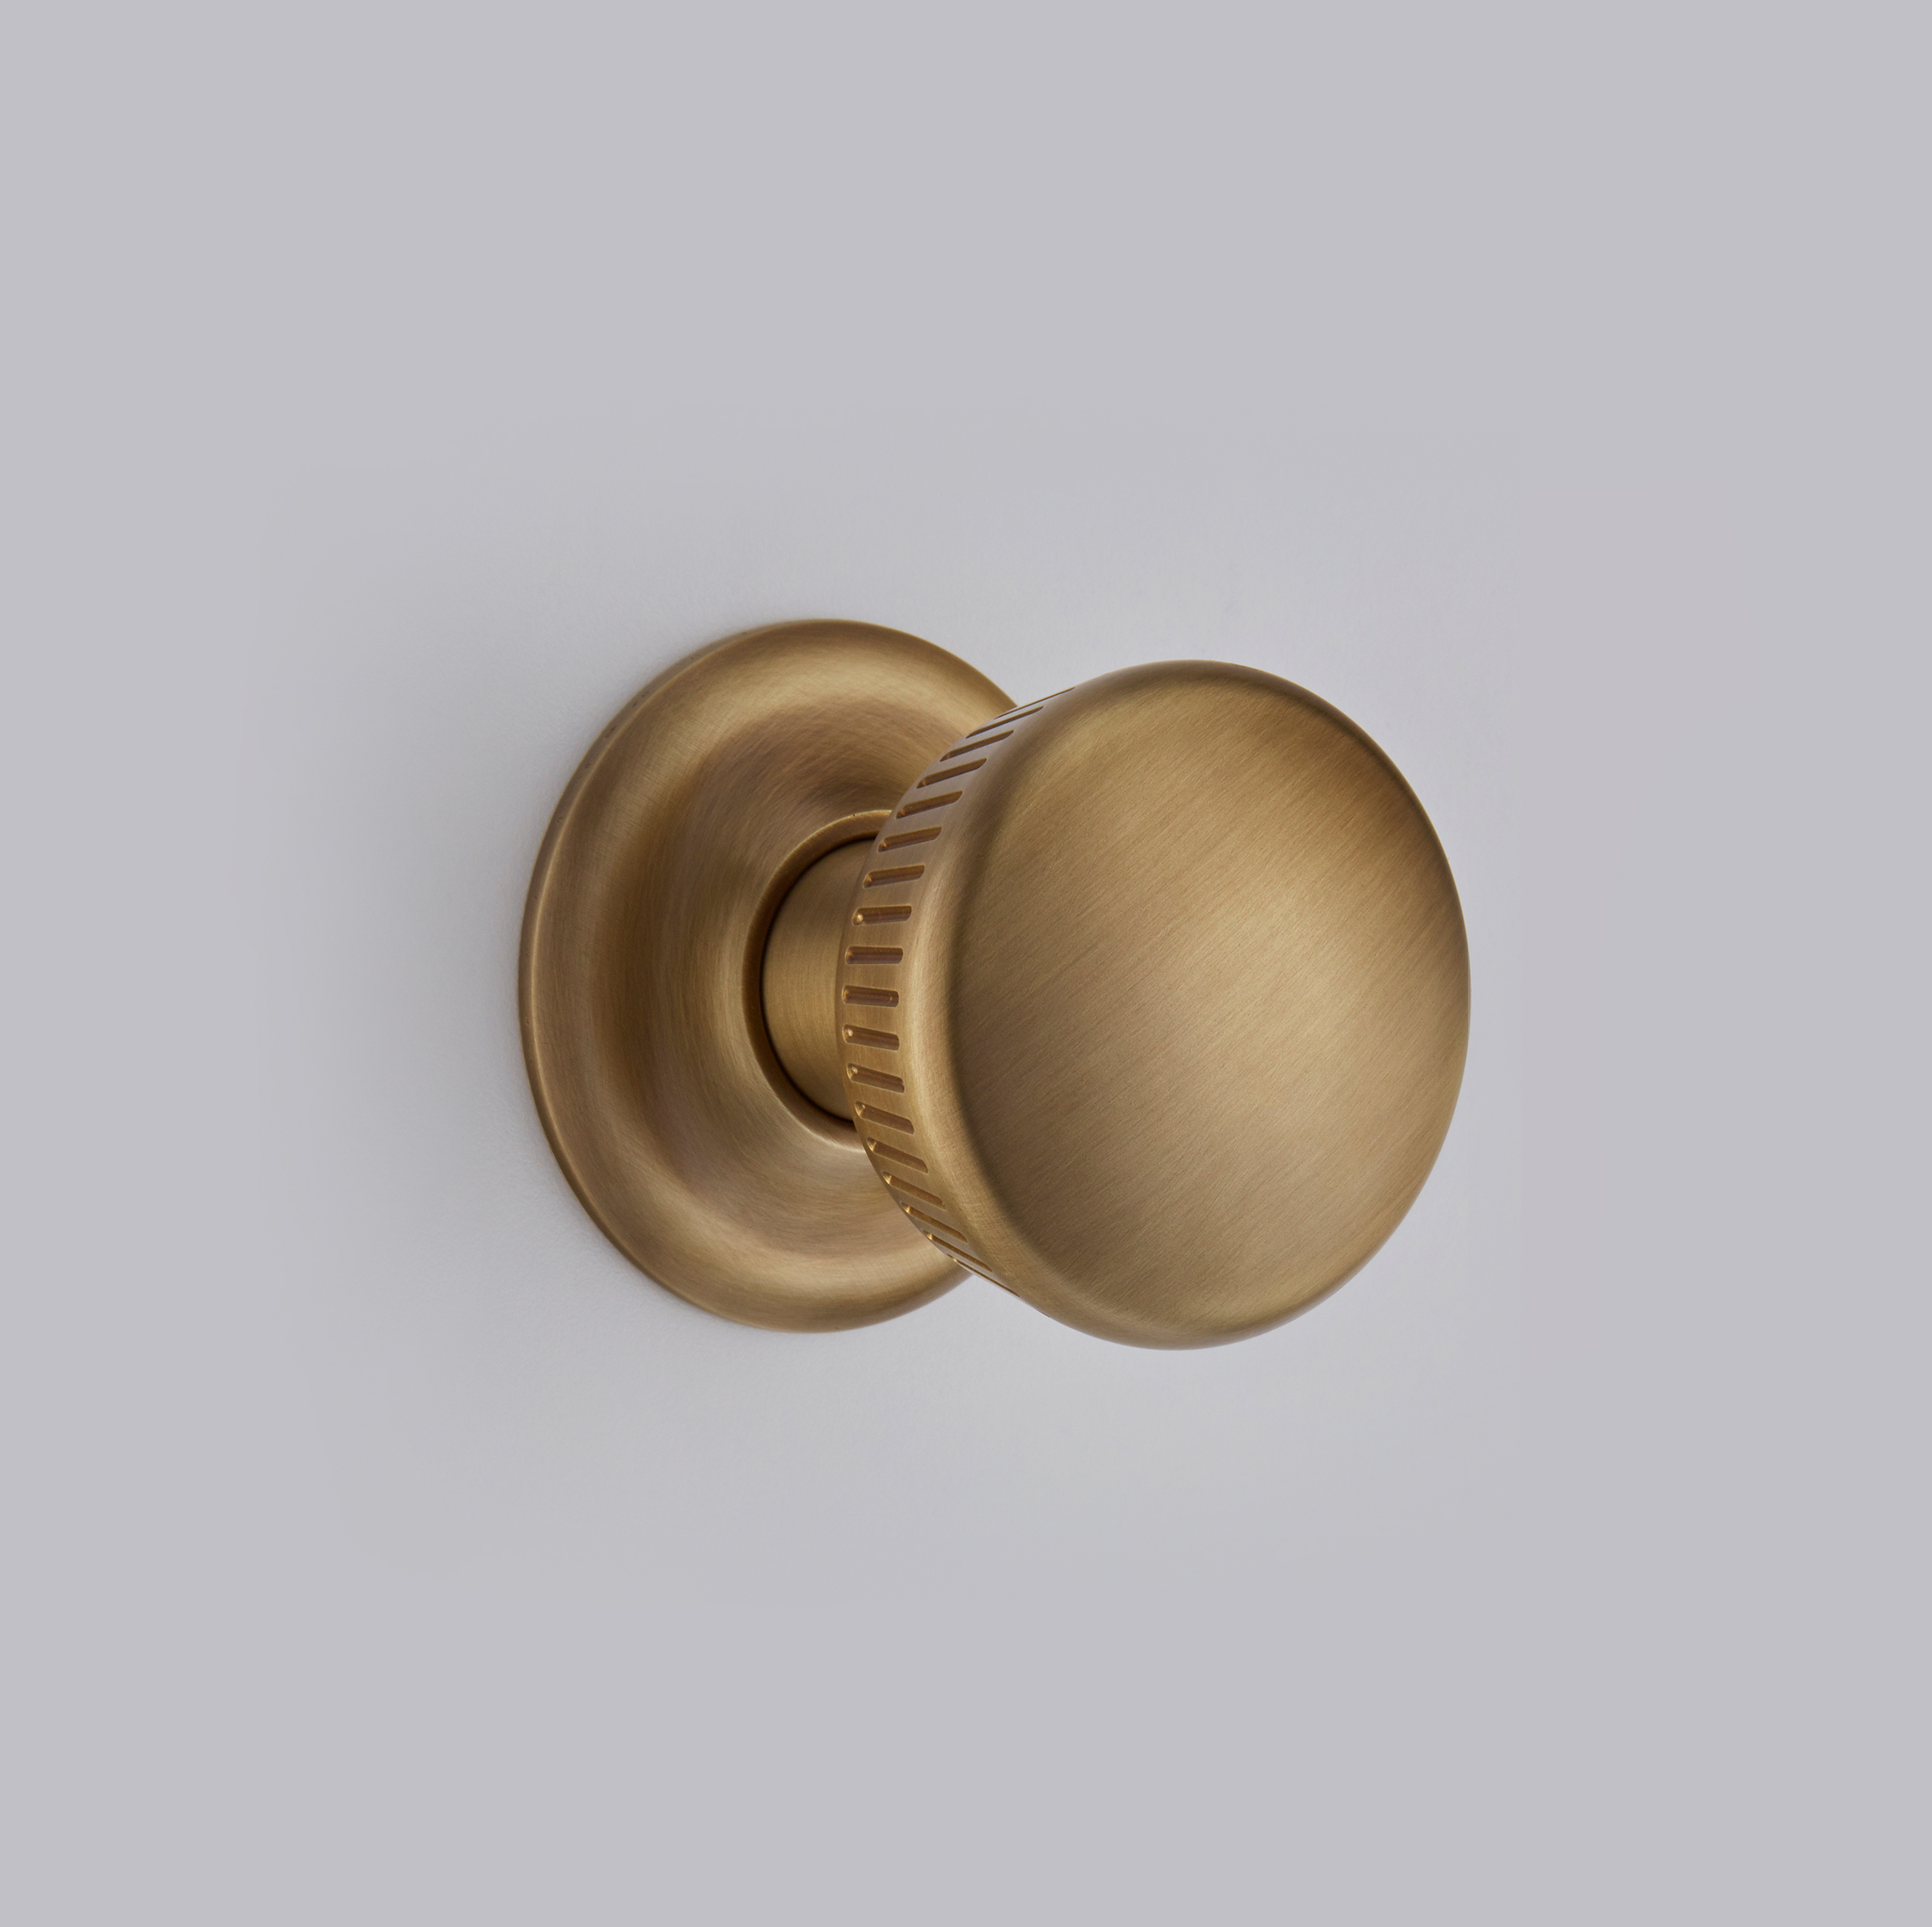 Croft 4165 4165R Oval Mortice Or Rim Door Knobs in Brass Bronze